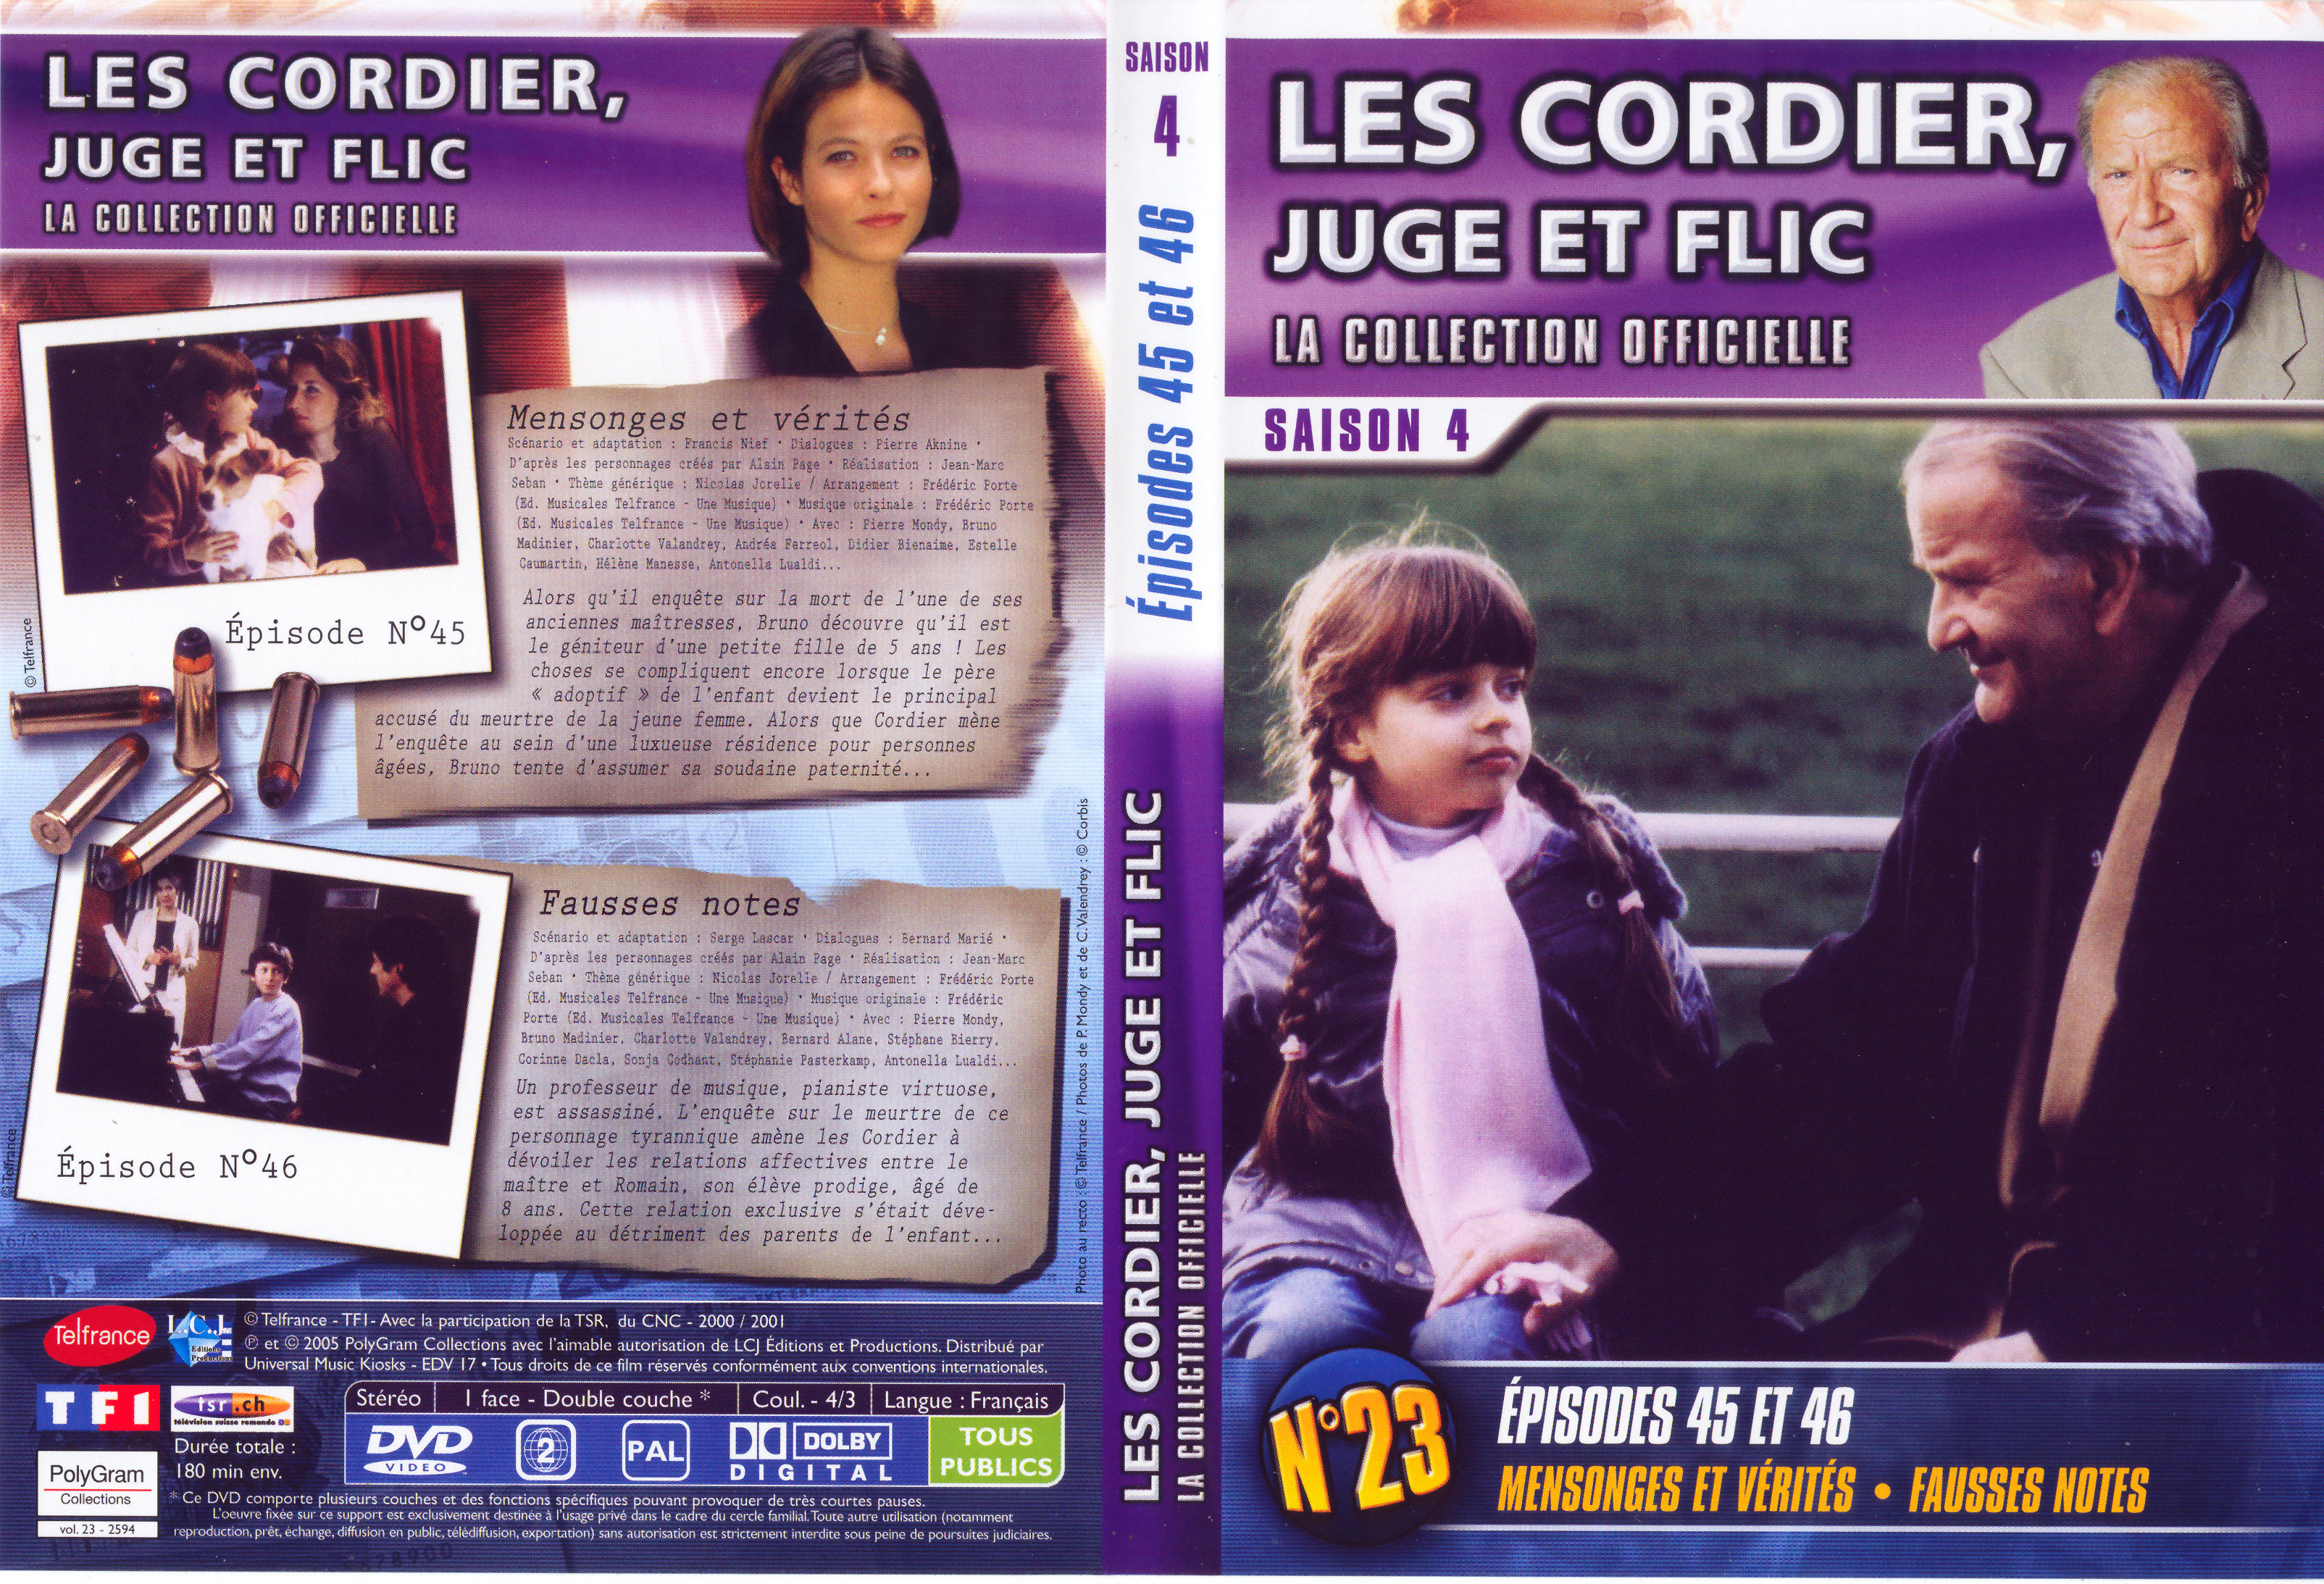 Jaquette DVD Les cordier juge et flic Saison 4 vol 23